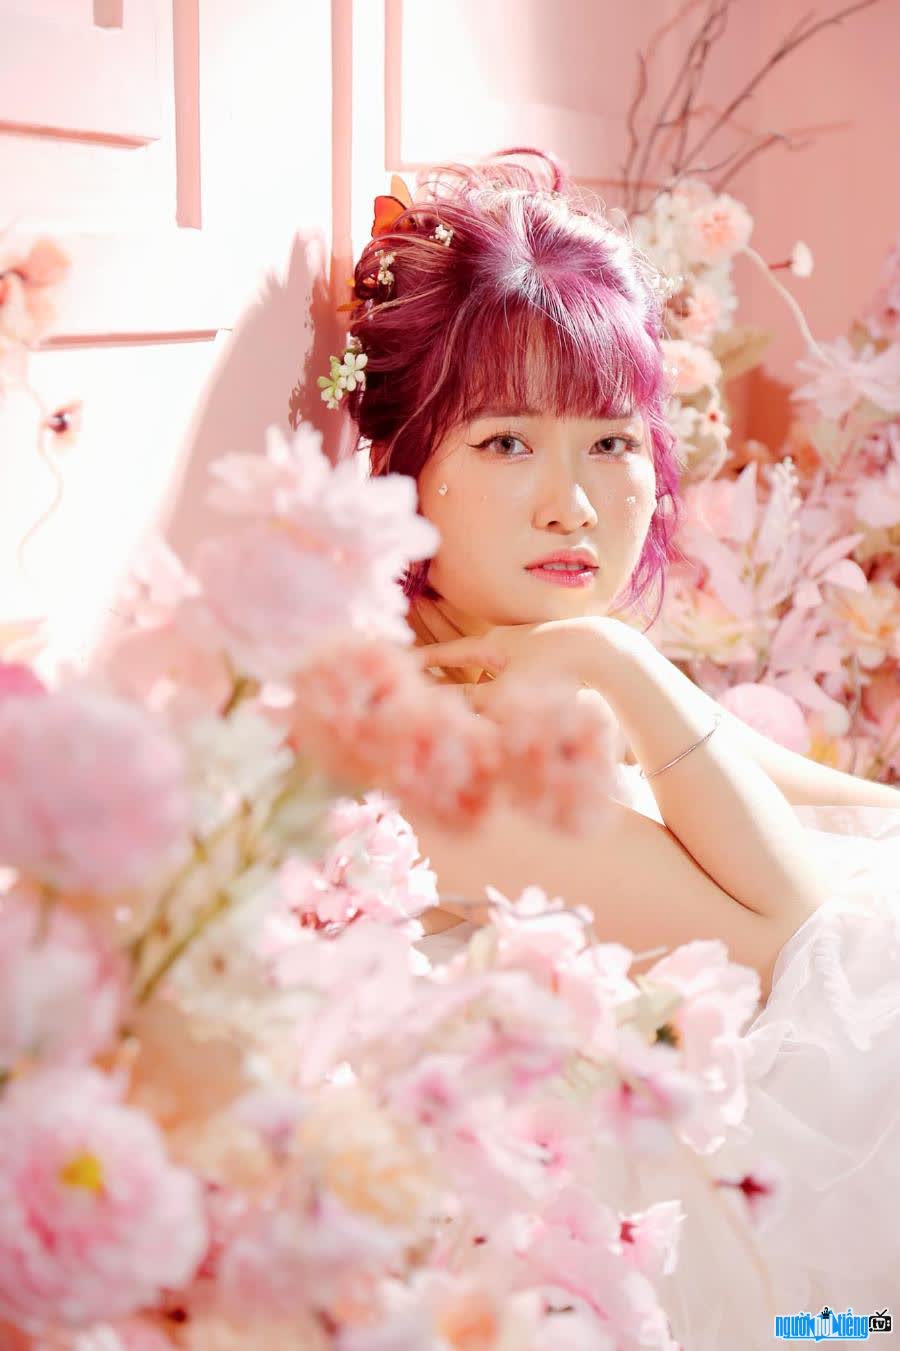 Tiểu Song được biết đến với vai trò là một KOLs người mẫu ảnh và Freelancer Agency